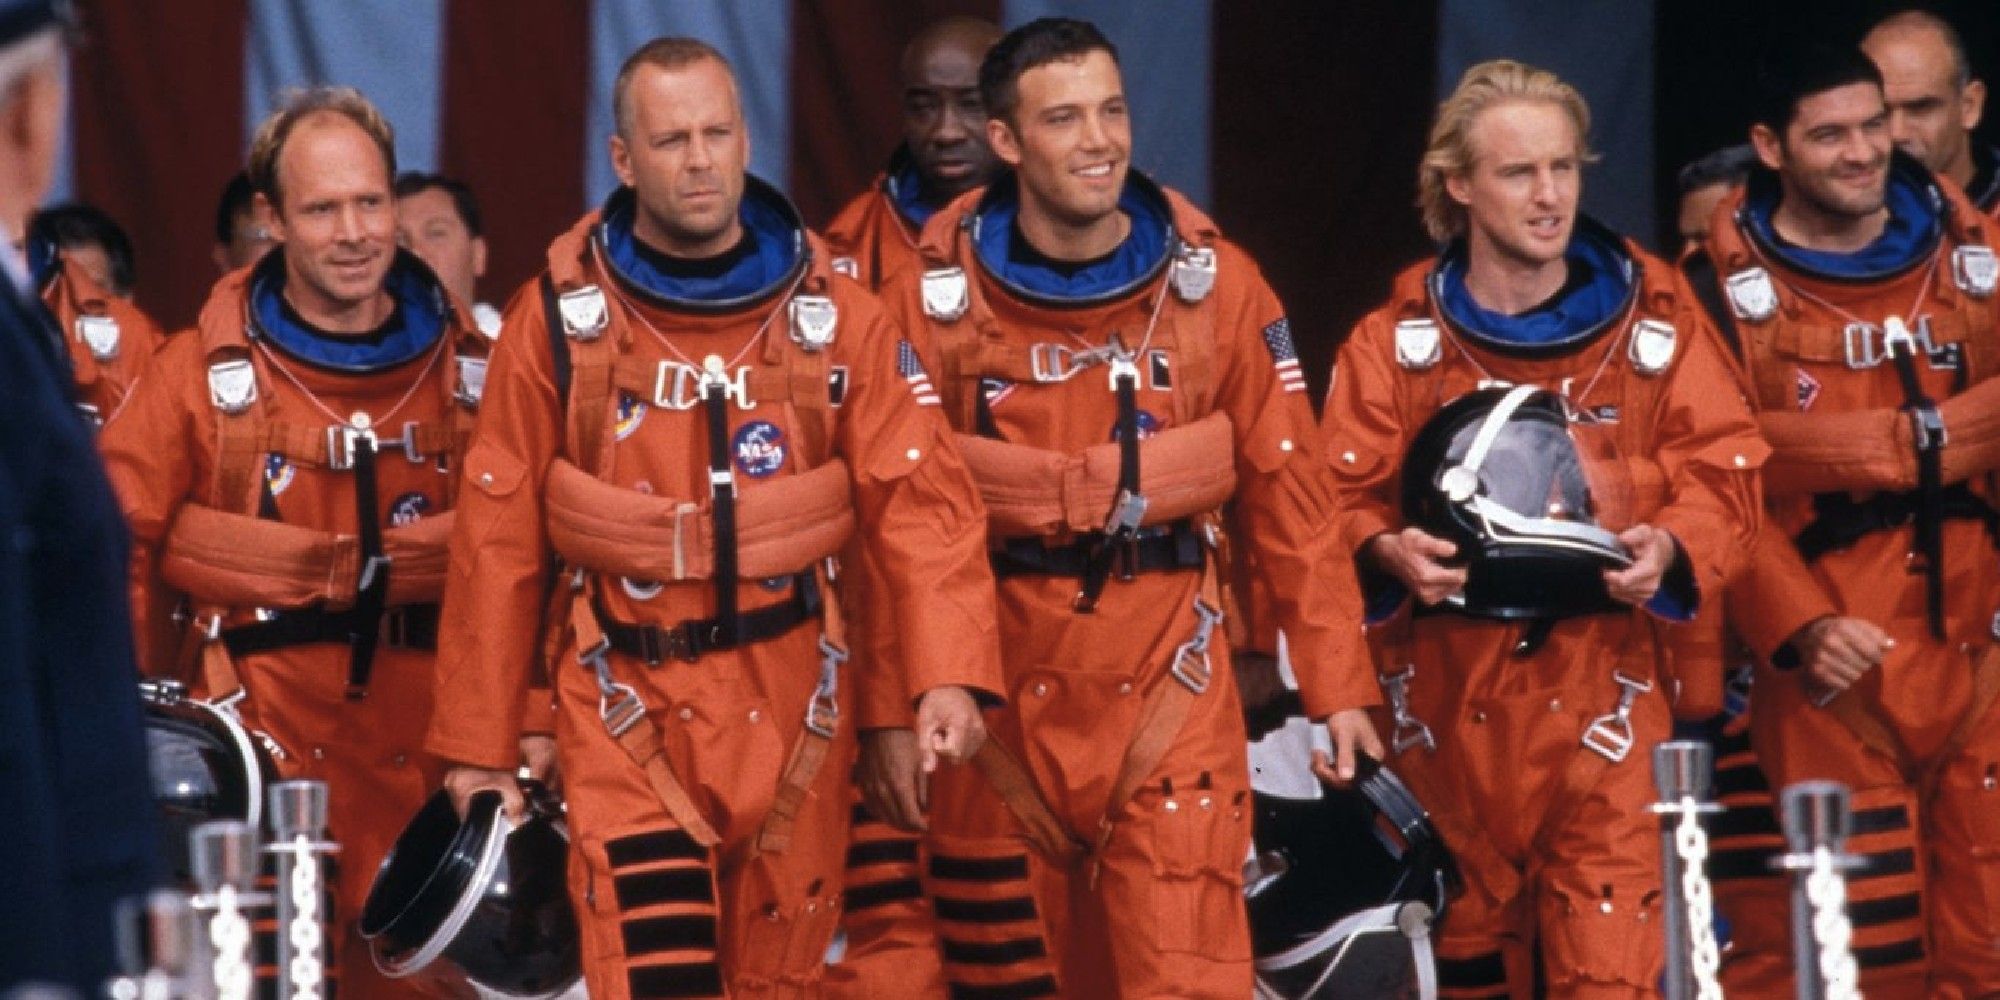 Uma tripulação de astronautas viajando juntos